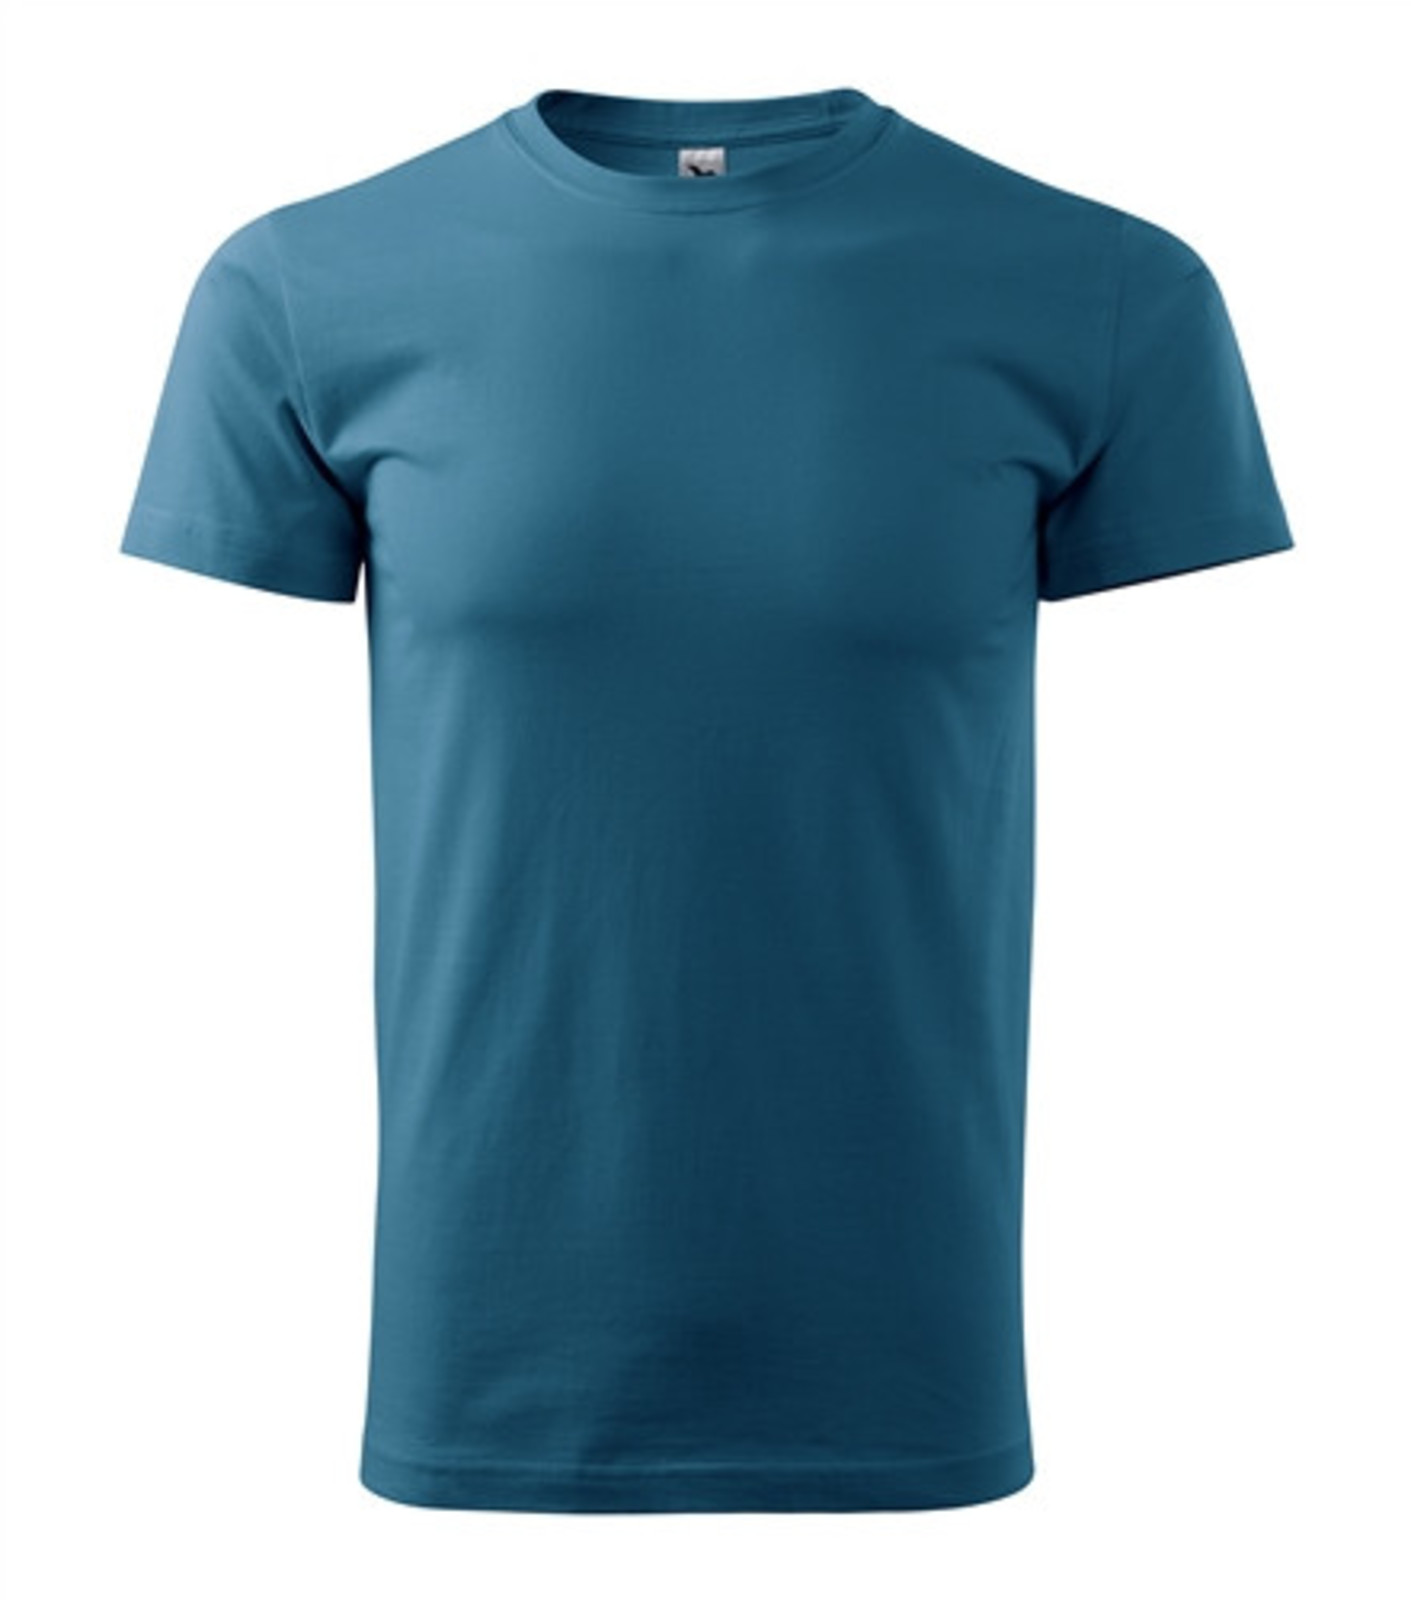 Unisex tričko Malfini Heavy New 137 - veľkosť: M, farba: petrolejová modrá